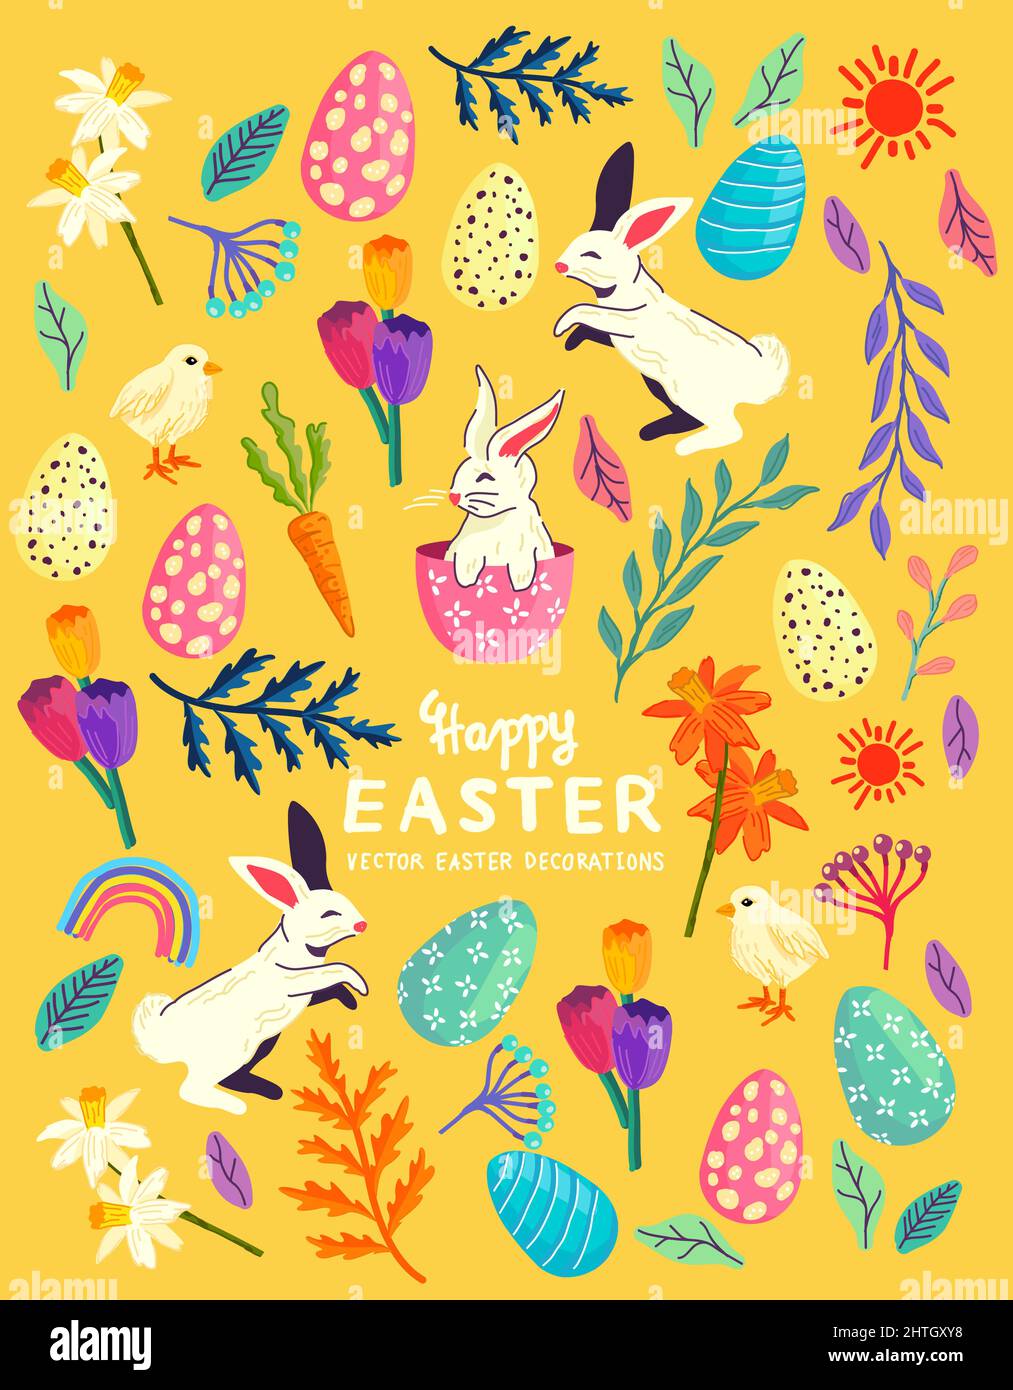 Une collection d'éléments de célébration de pâques avec des lapins, des décorations florales et des oeufs de pâques! Illustration vectorielle Illustration de Vecteur